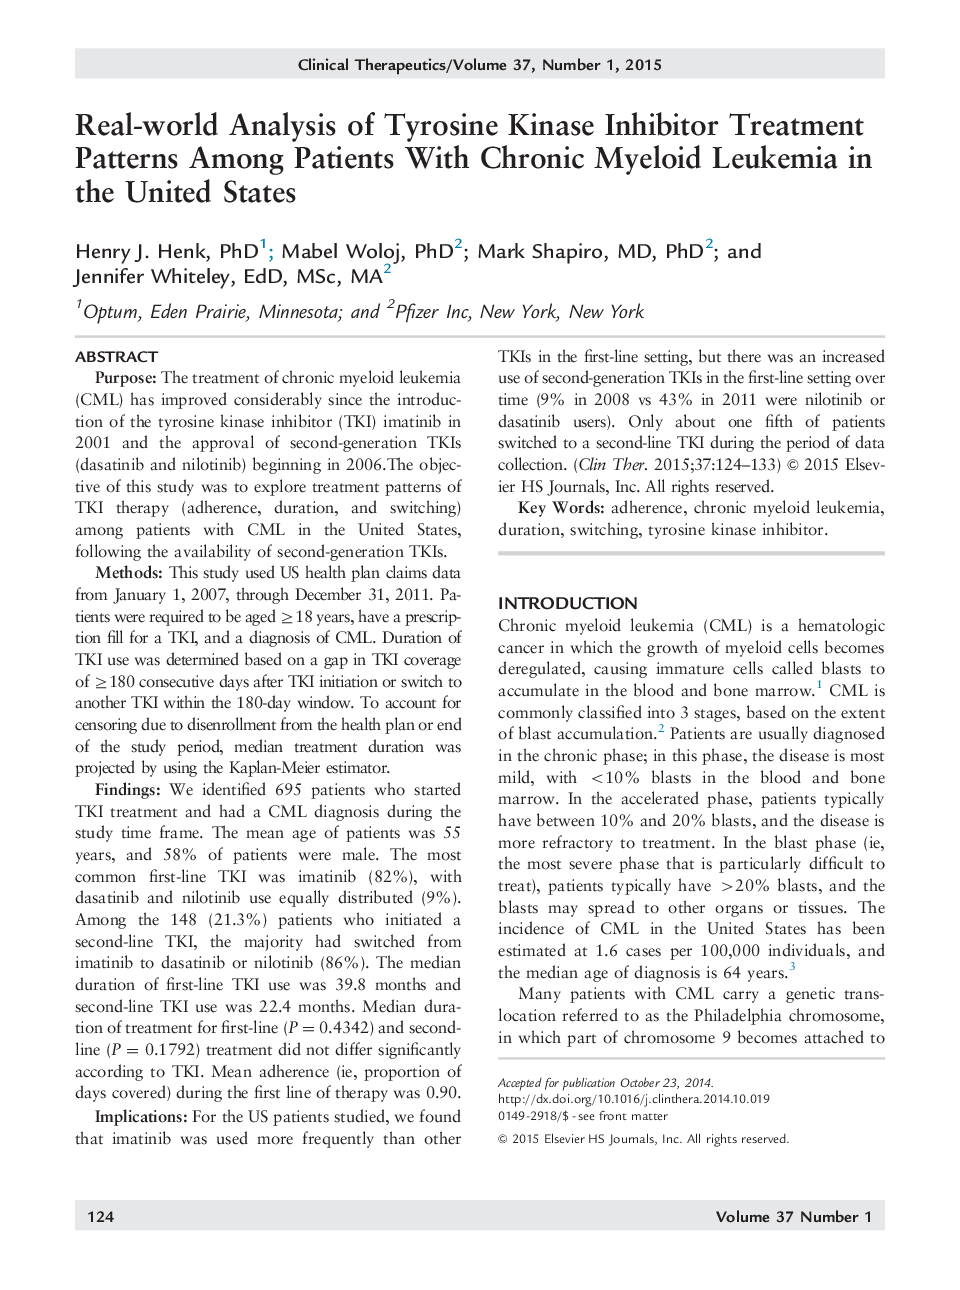 تجزیه و تحلیل واقعی از روش های بازدارنده مهار کننده تریروزین کیناز در بین بیماران مبتلا به لوسمی مزمن میلوئیدی در ایالات متحده 